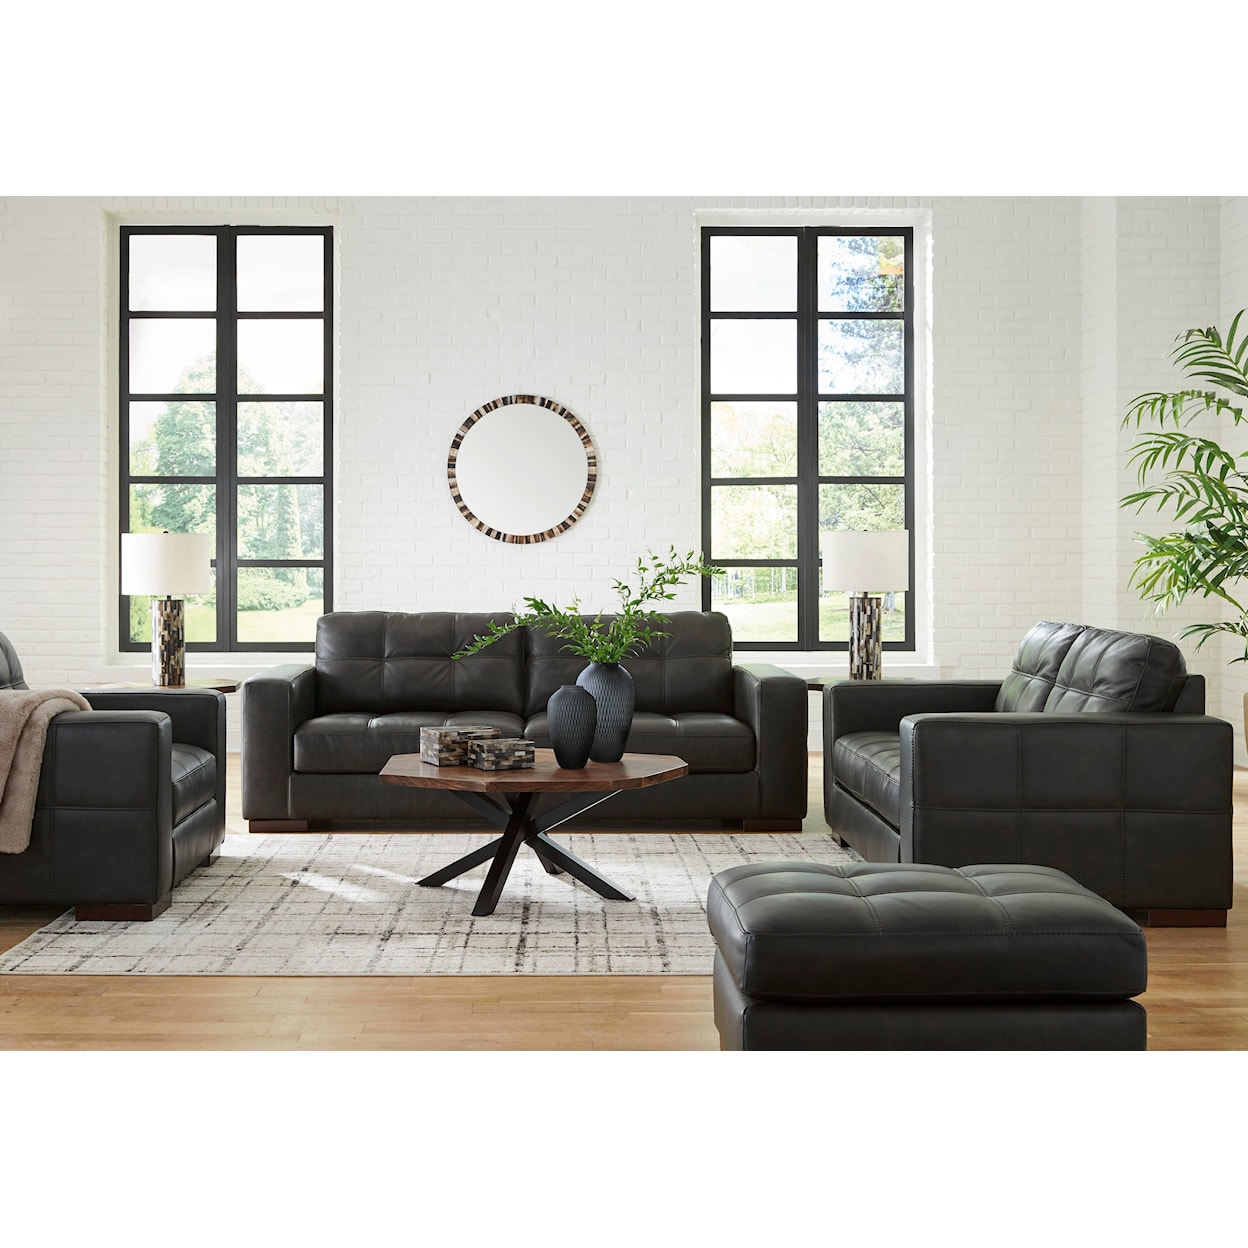 Ashley Furniture Signature Design Luigi Living Room Set